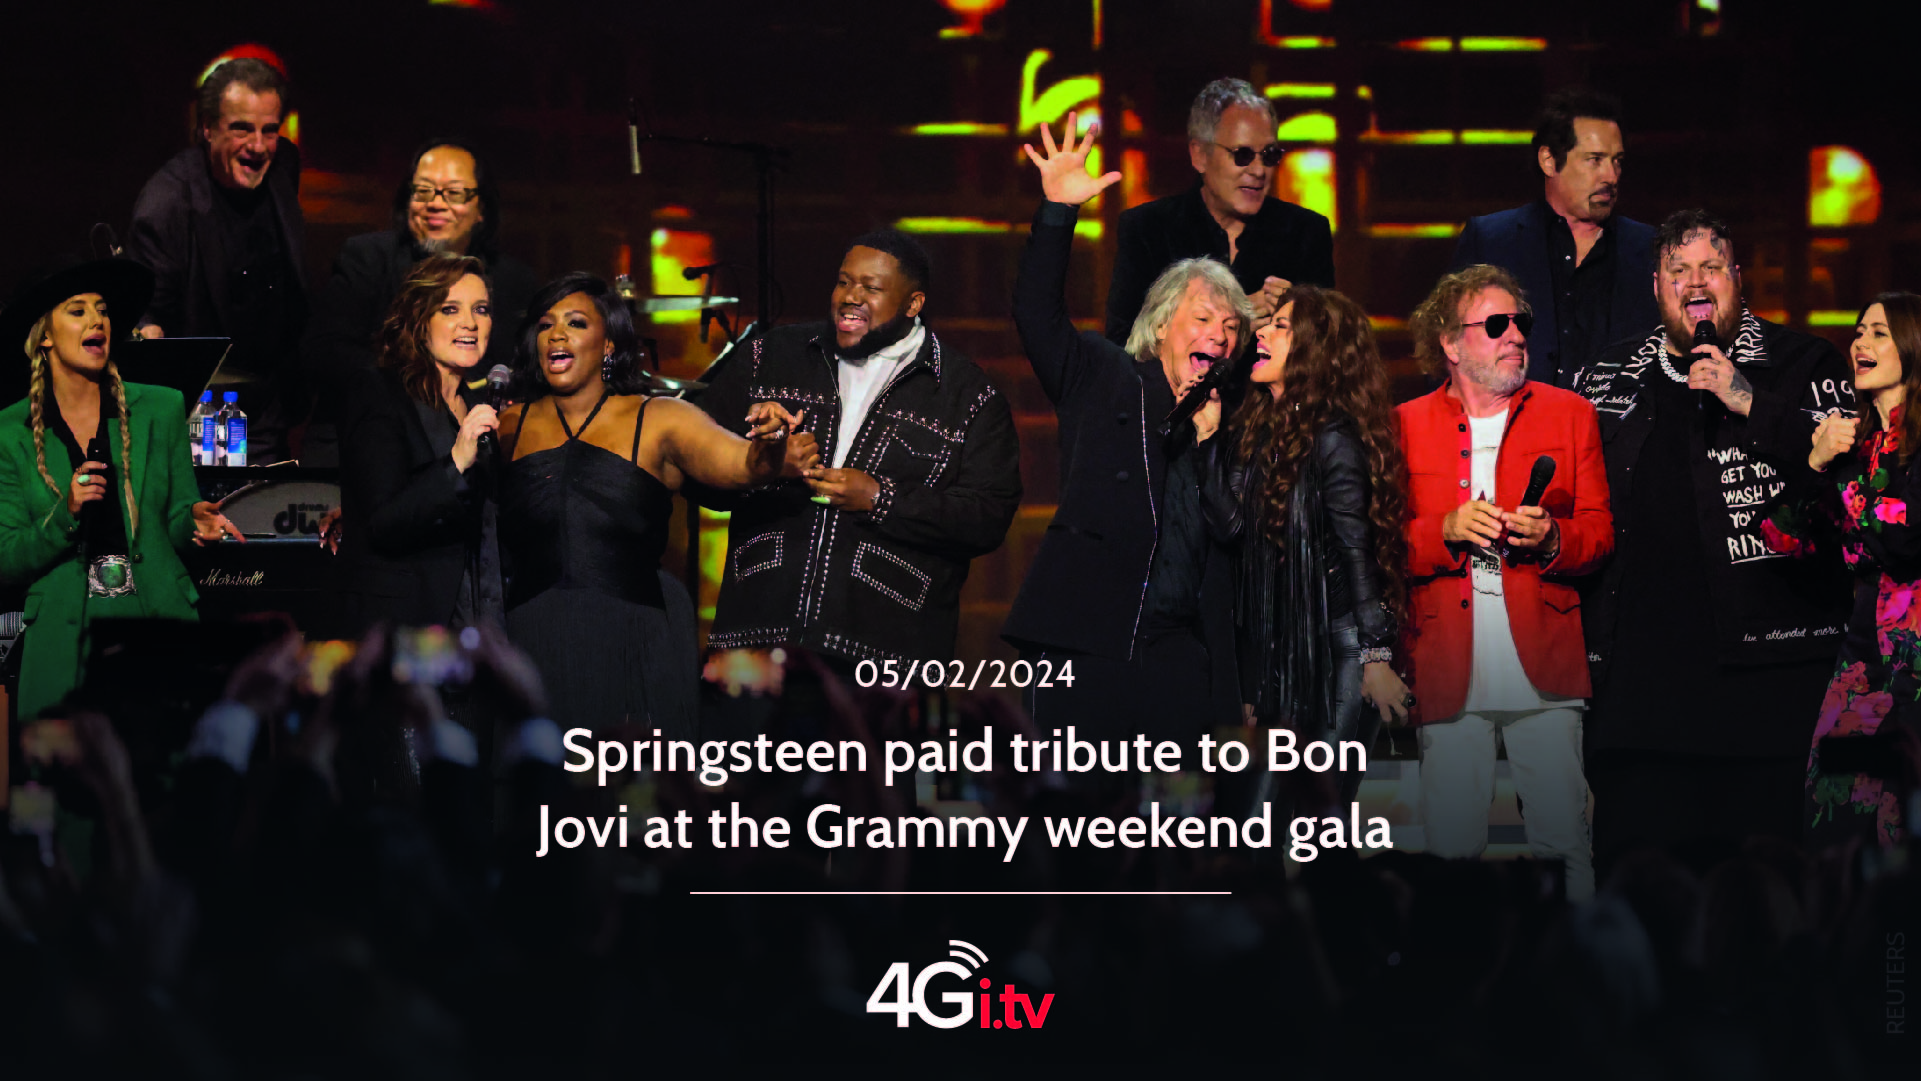 Lesen Sie mehr über den Artikel Springsteen paid tribute to Bon Jovi at the Grammy weekend gala